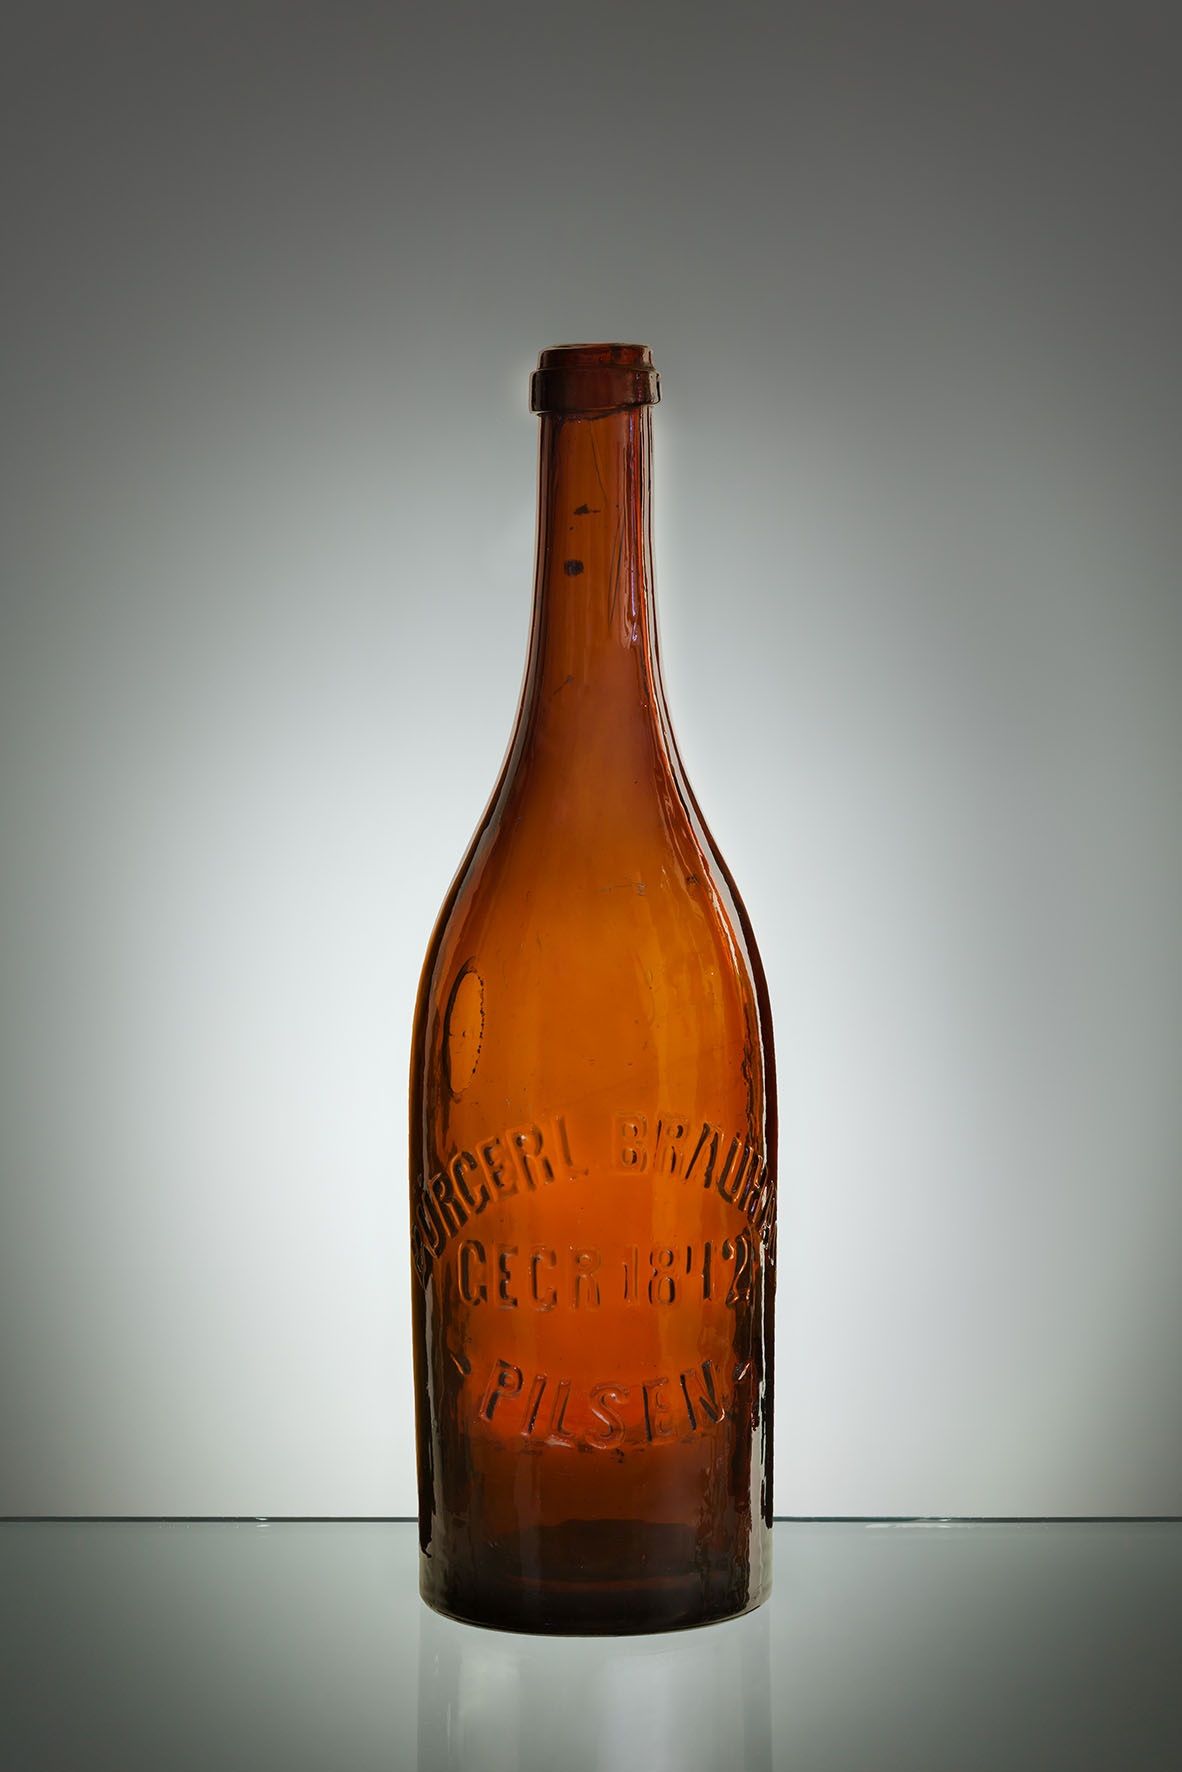 Pilsner Urquell skleněná lahev kolem roku 1900 s reliéfním nápisem